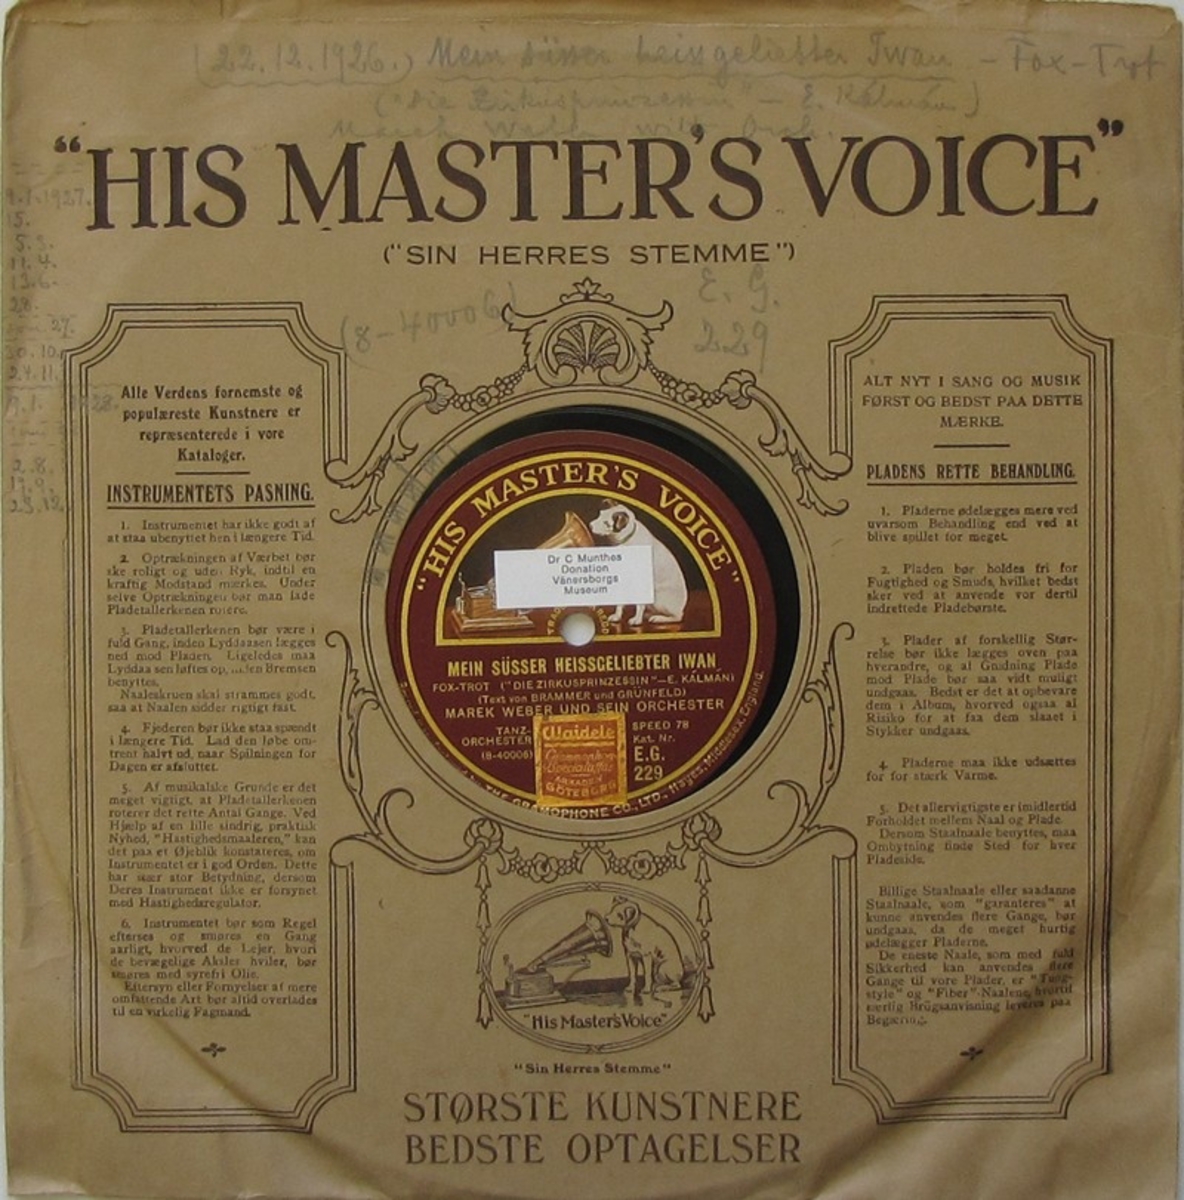 Vinylskiva av märket His Master's Voice